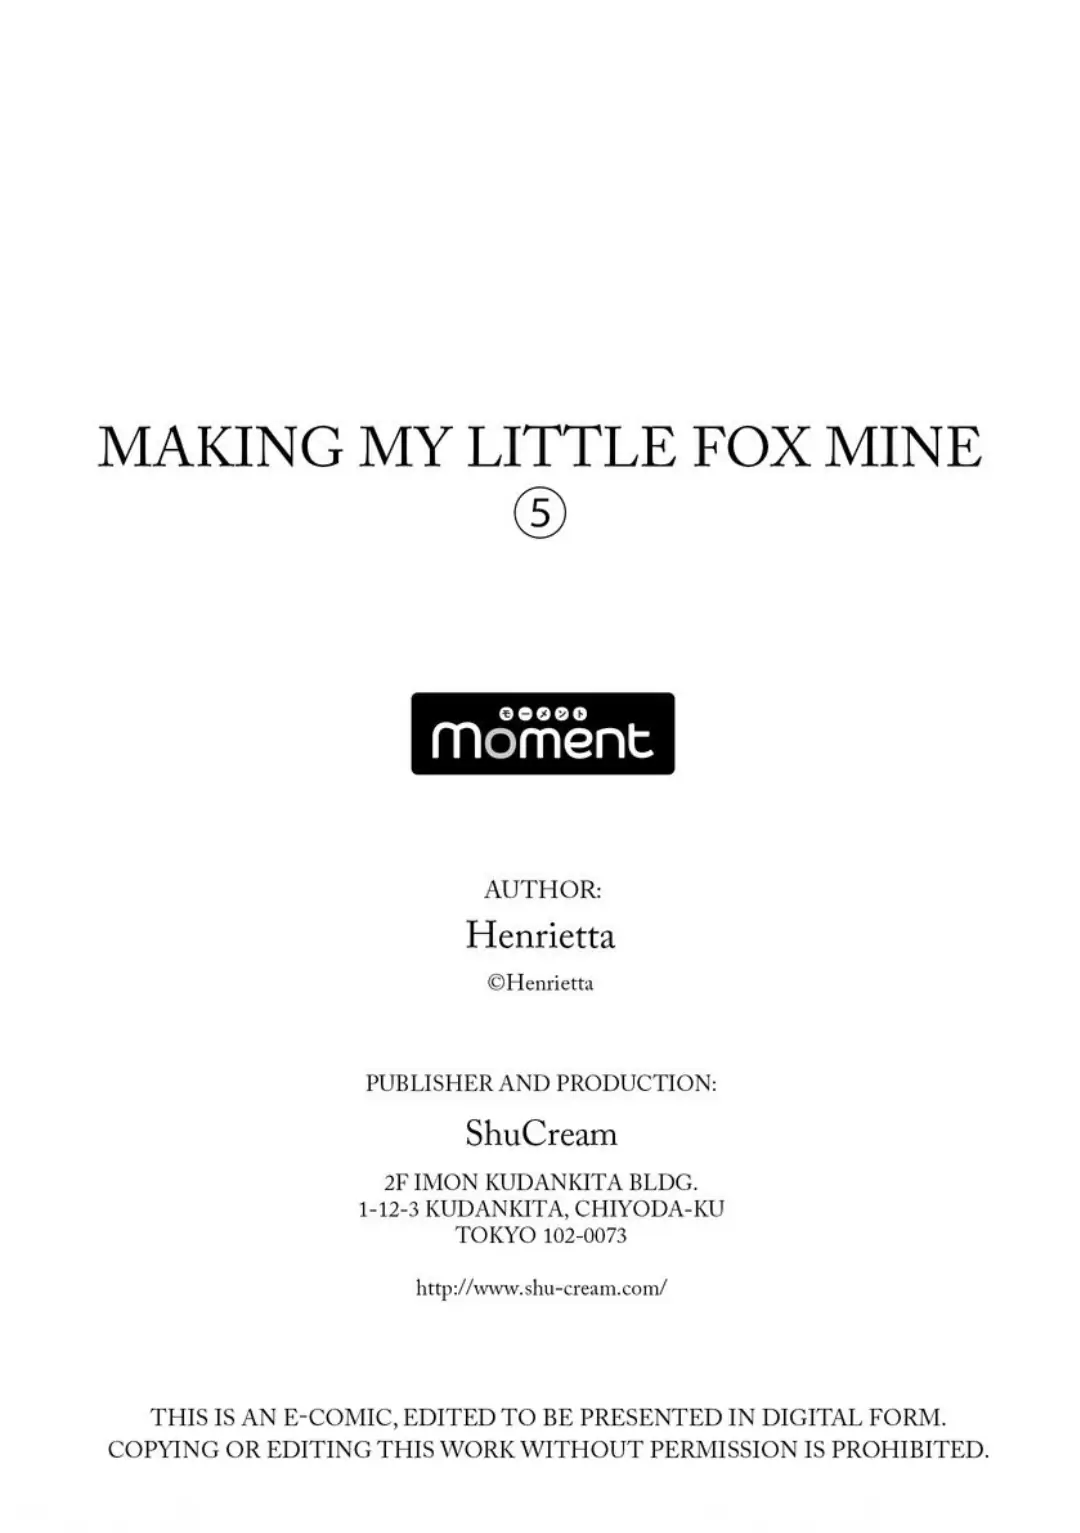 Making My Little Fox Mine, Henrietta